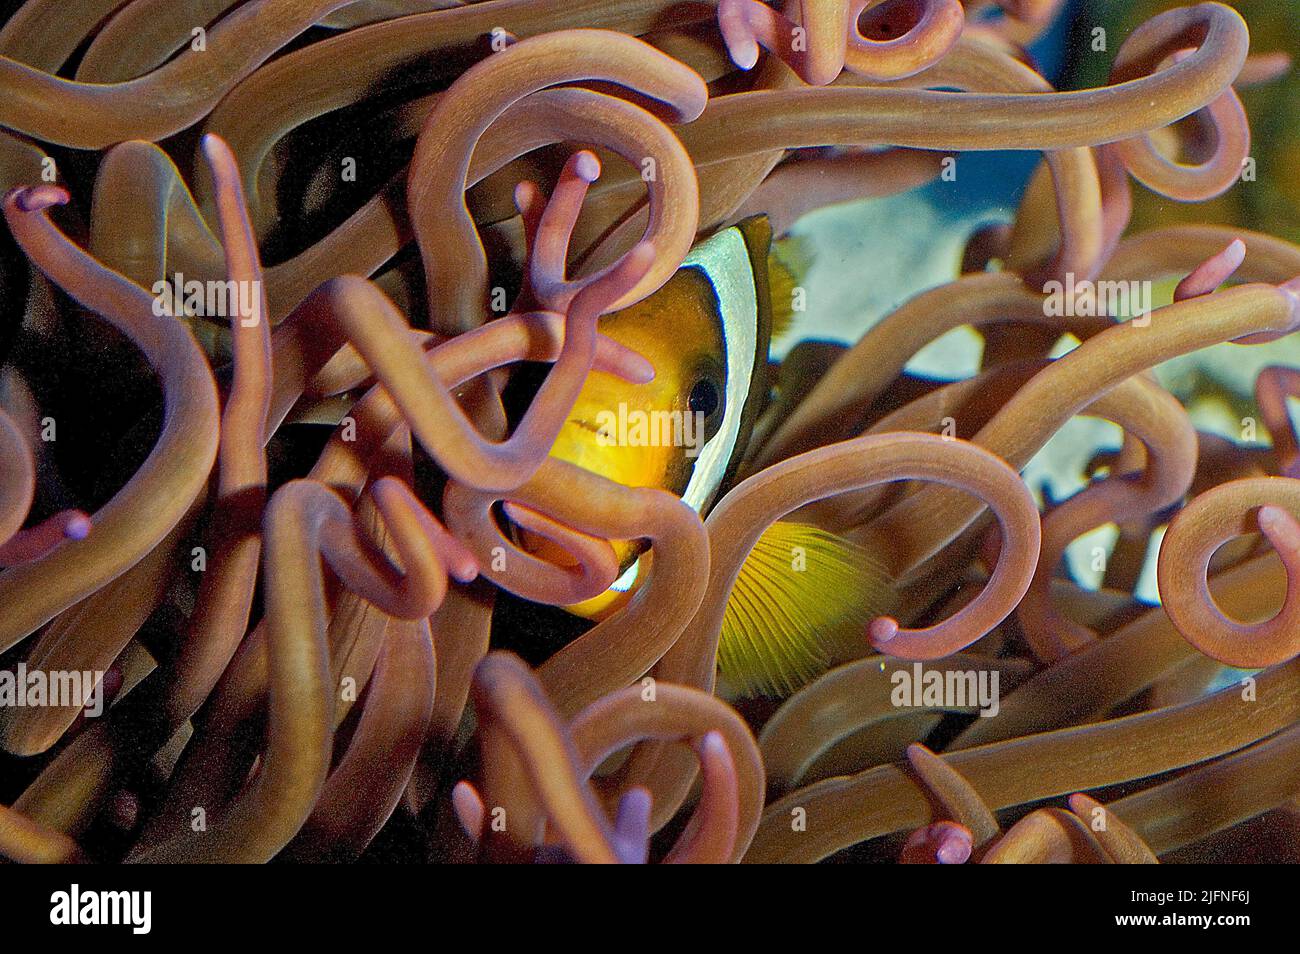 Pesce pagliaccio (Amphiprion sp.) tra i tentacoli ricci di un anemone di mare ospite. Foto Stock